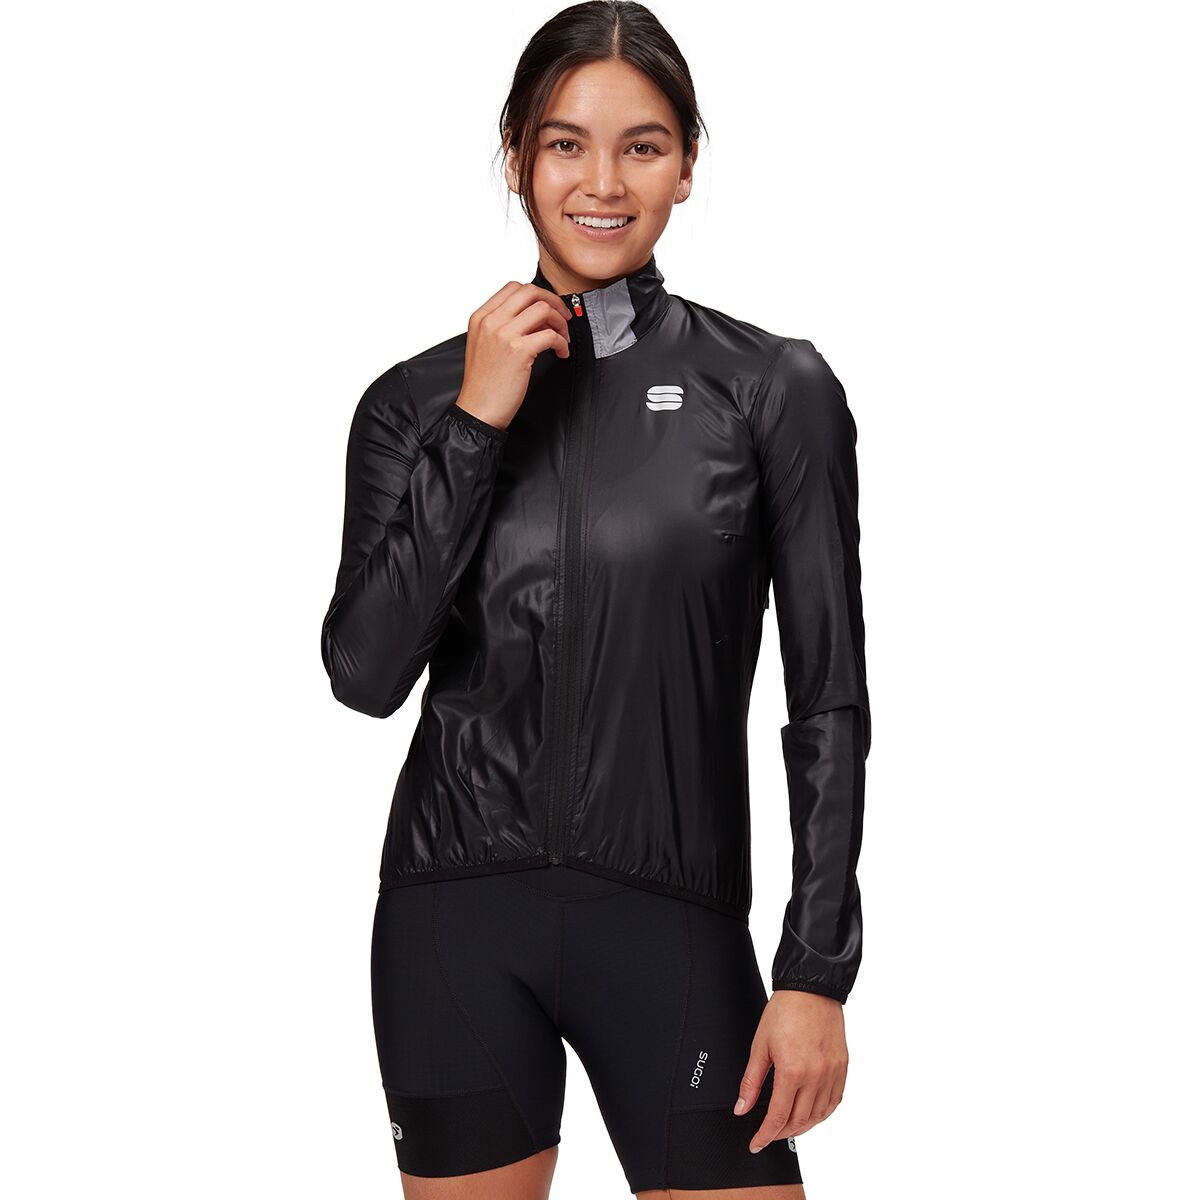 Sportful Hot Pack Easylight Jacket - Women's Black, XS